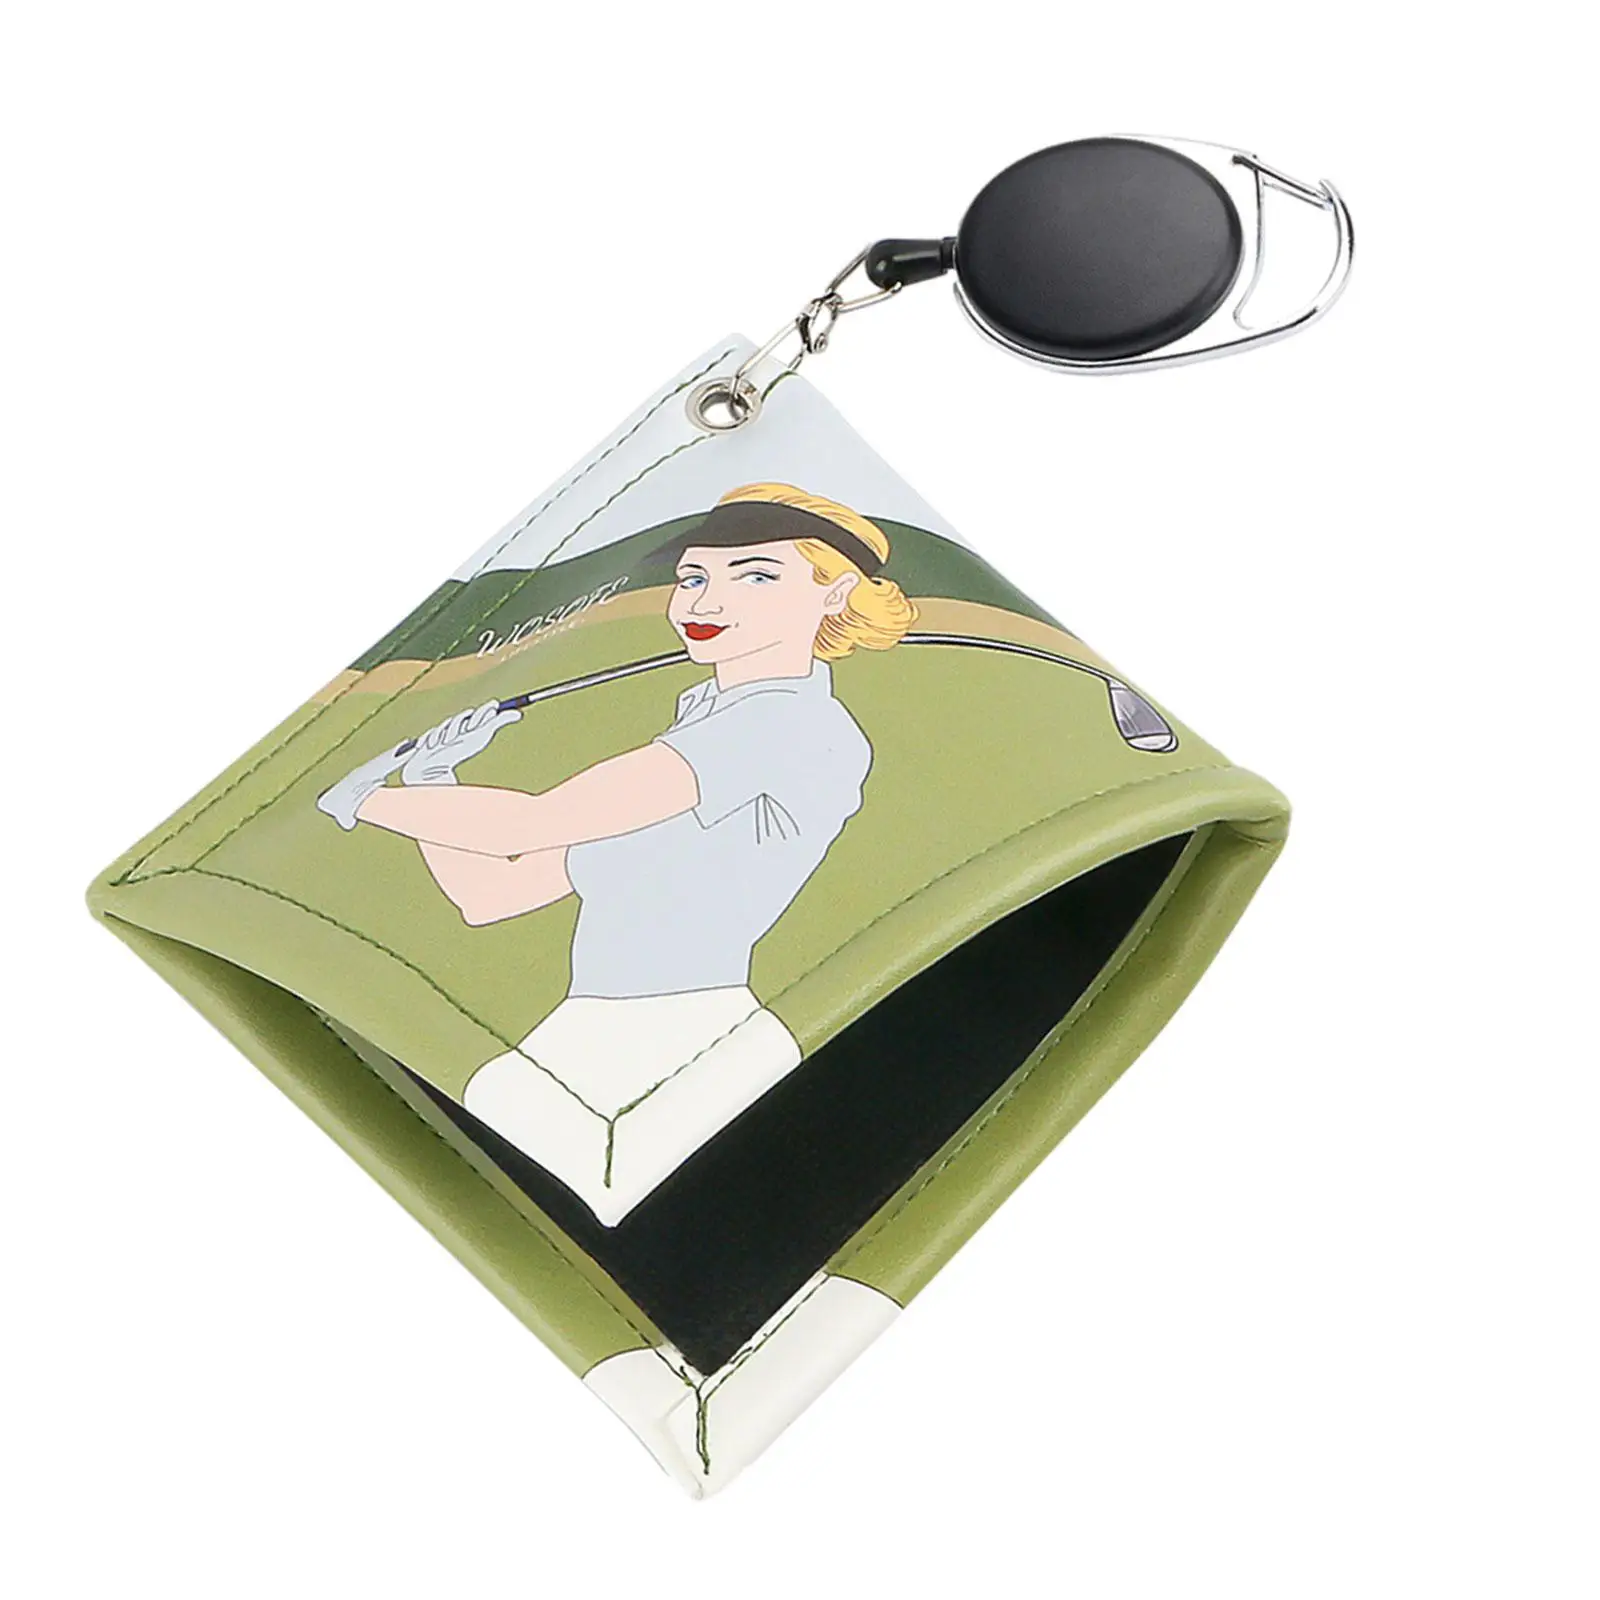 

Полотенце в виде мяча для гольфа, аксессуары для гольфа, портативная с выдвижным брелоком, квадратная салфетка